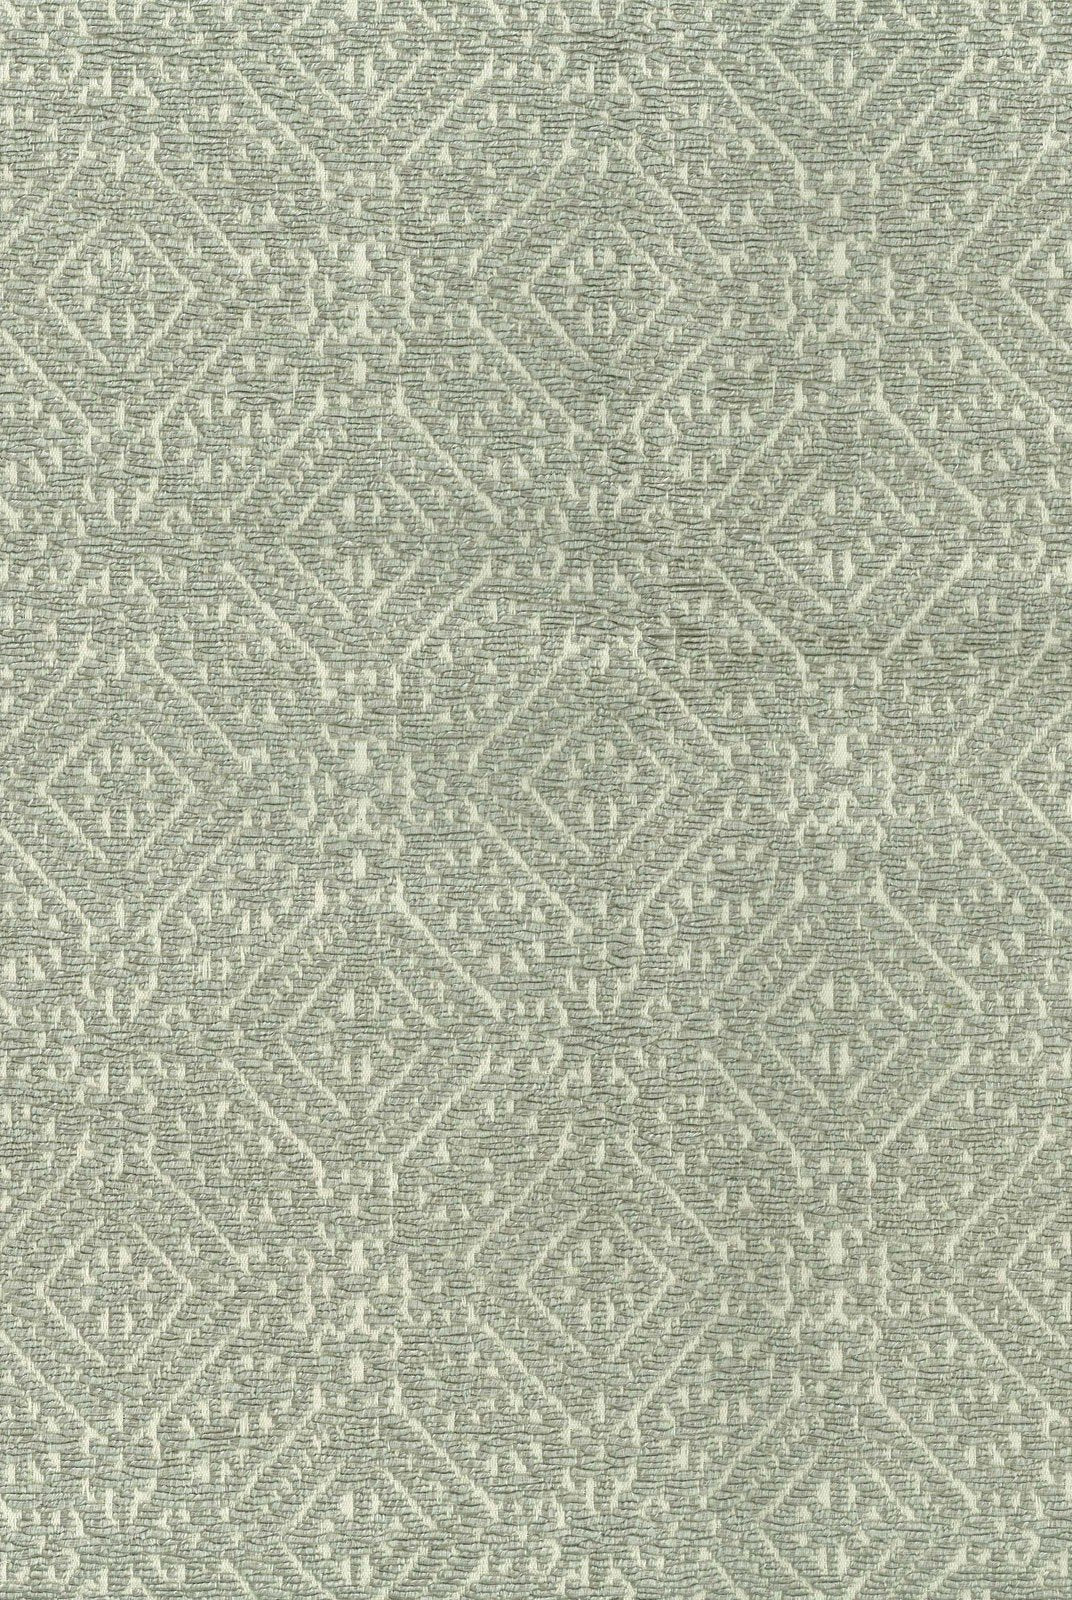 Nina Campbell Fabric - Cathay Weaves Bintan Silver NCF4165-01